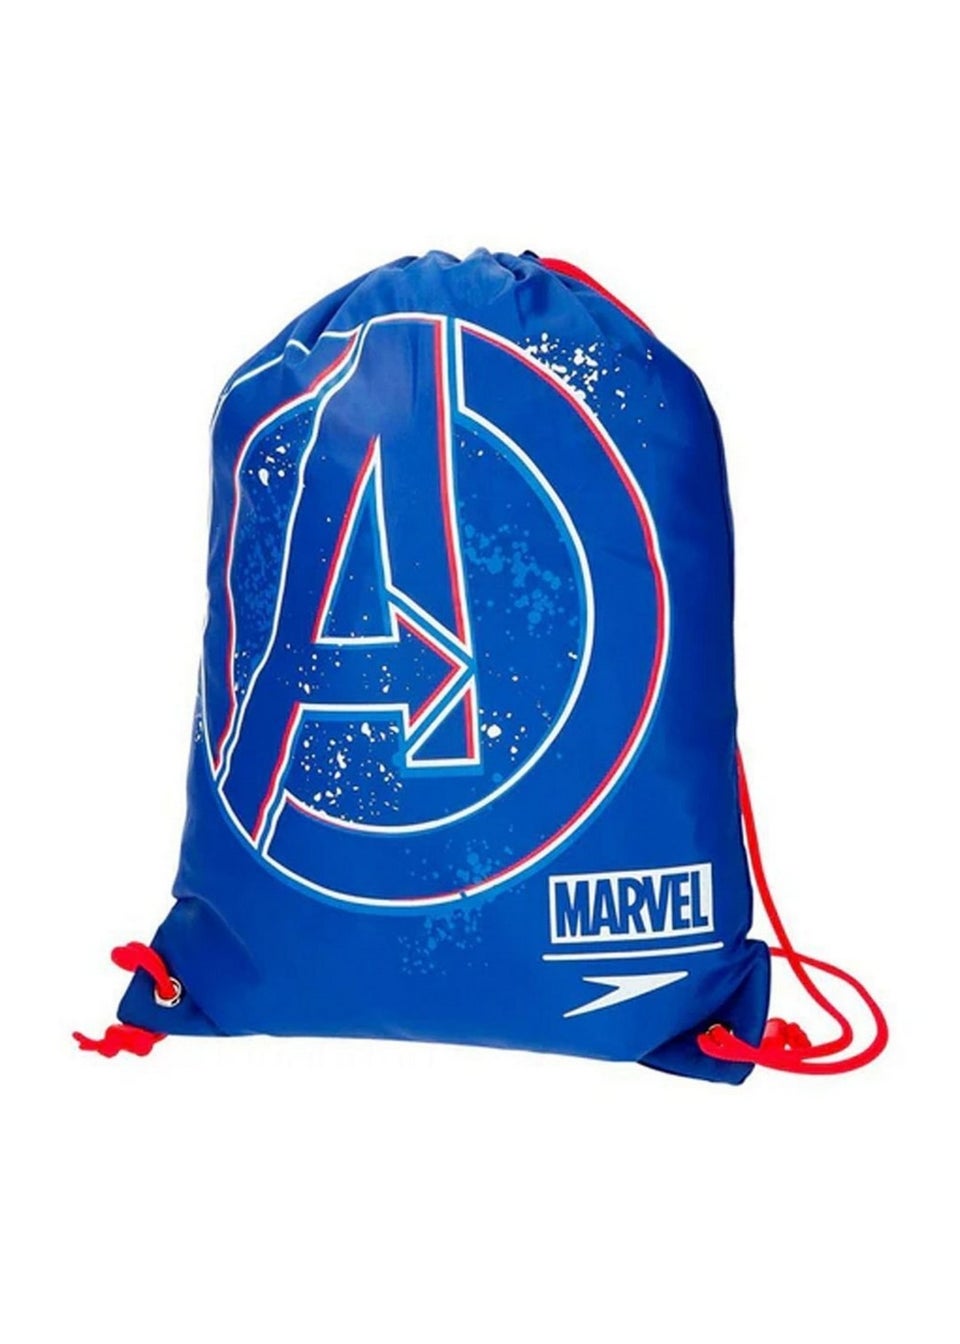 Marvel Avengers Blue Logo Speedo Drawstring Bag